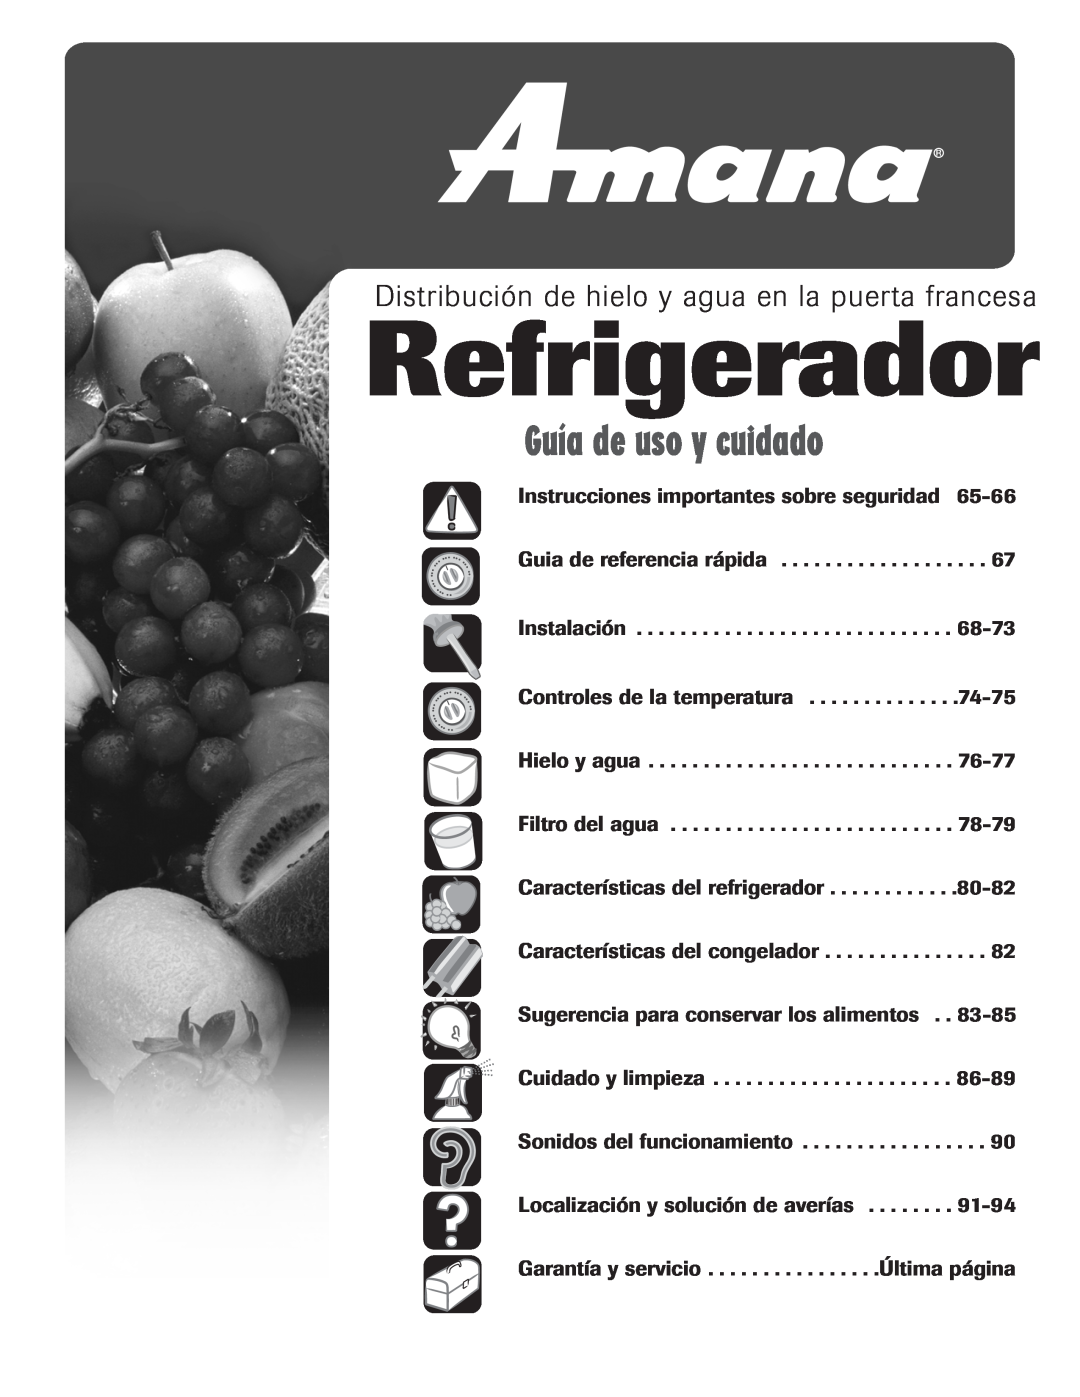 Amana AFI2538AEW Refrigerador, Guía de uso y cuidado, Distribución de hielo y agua en la puerta frances a 